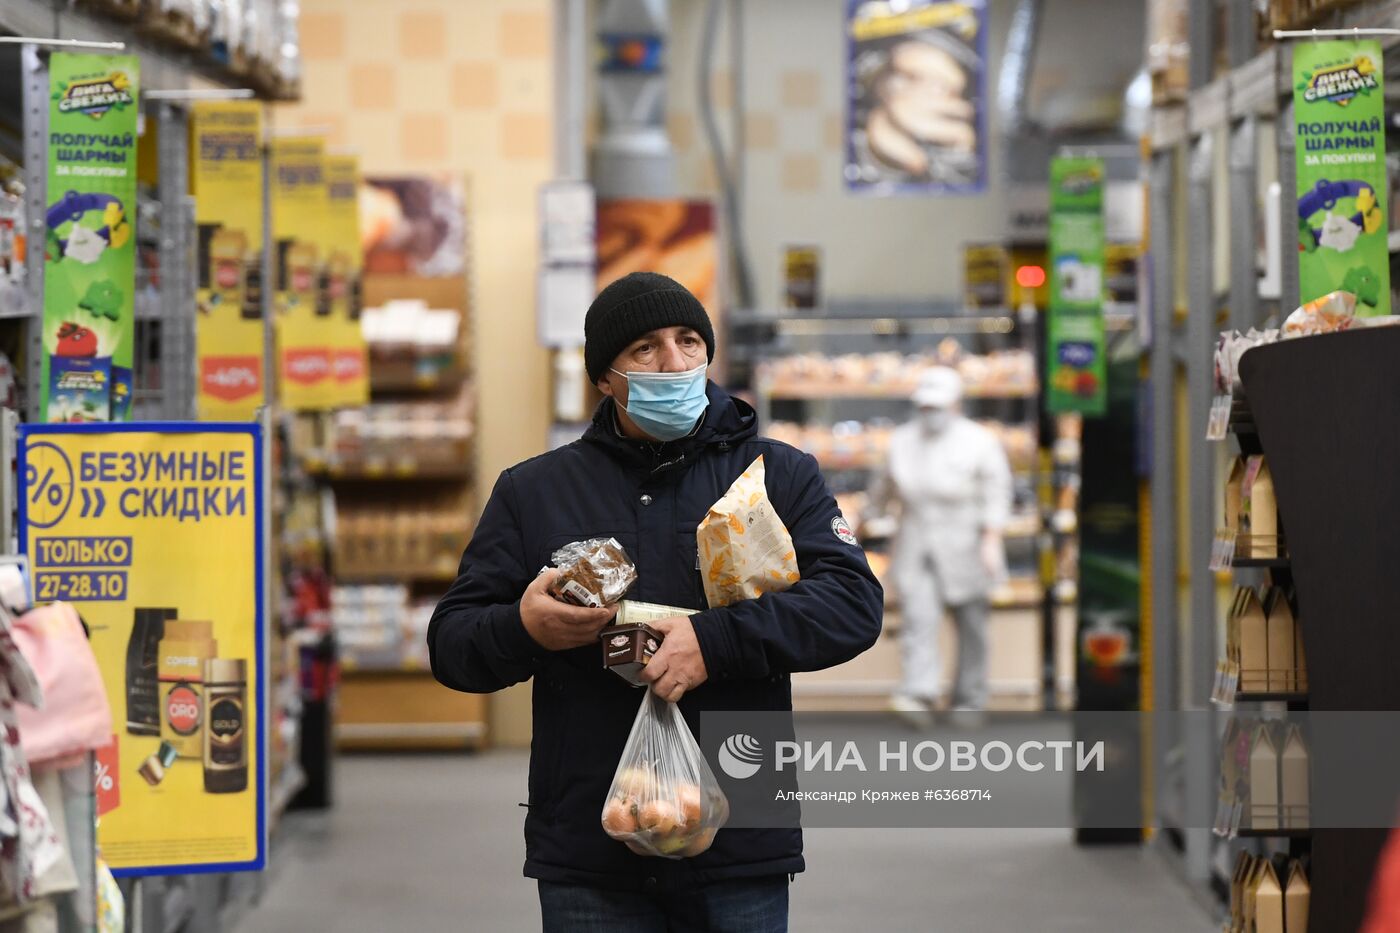 Работа гипермаркета "Лента" в Новосибирске